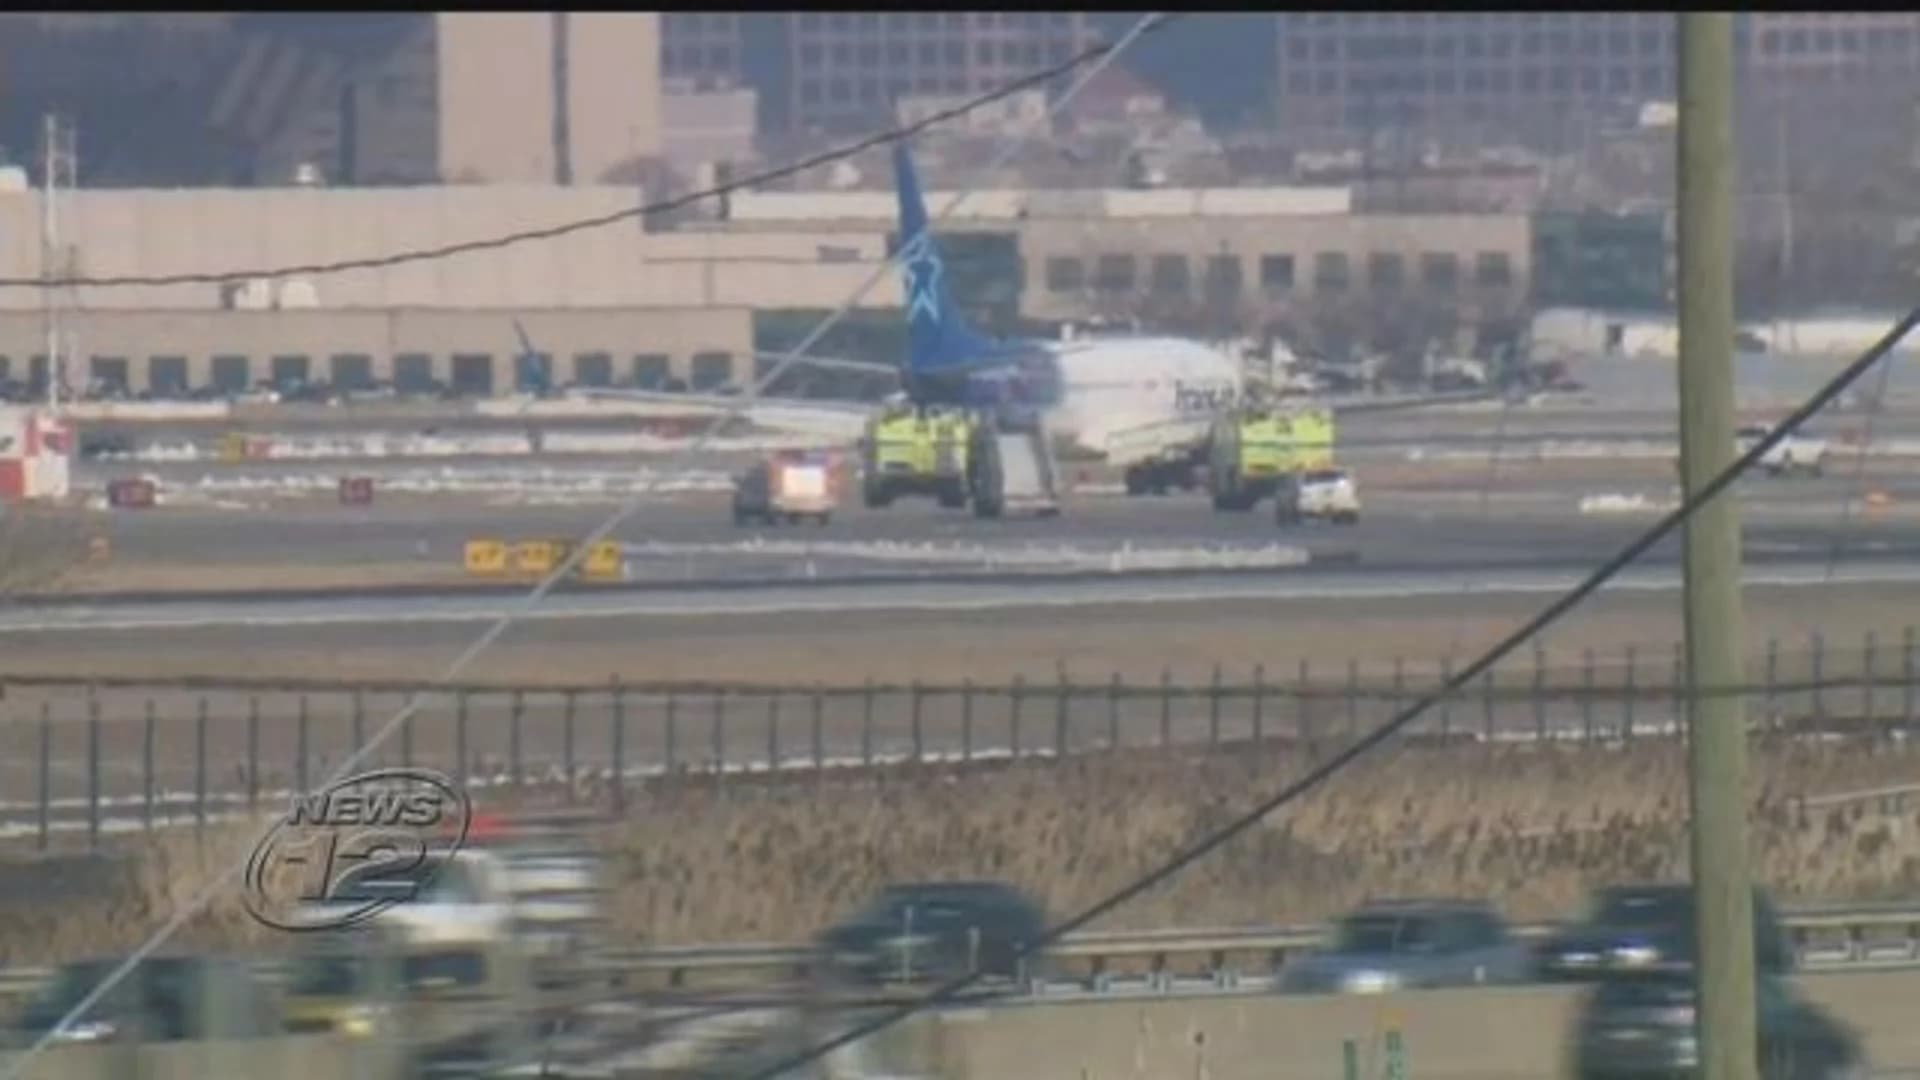 Plane makes emergency landing, passengers evacuated in Newark